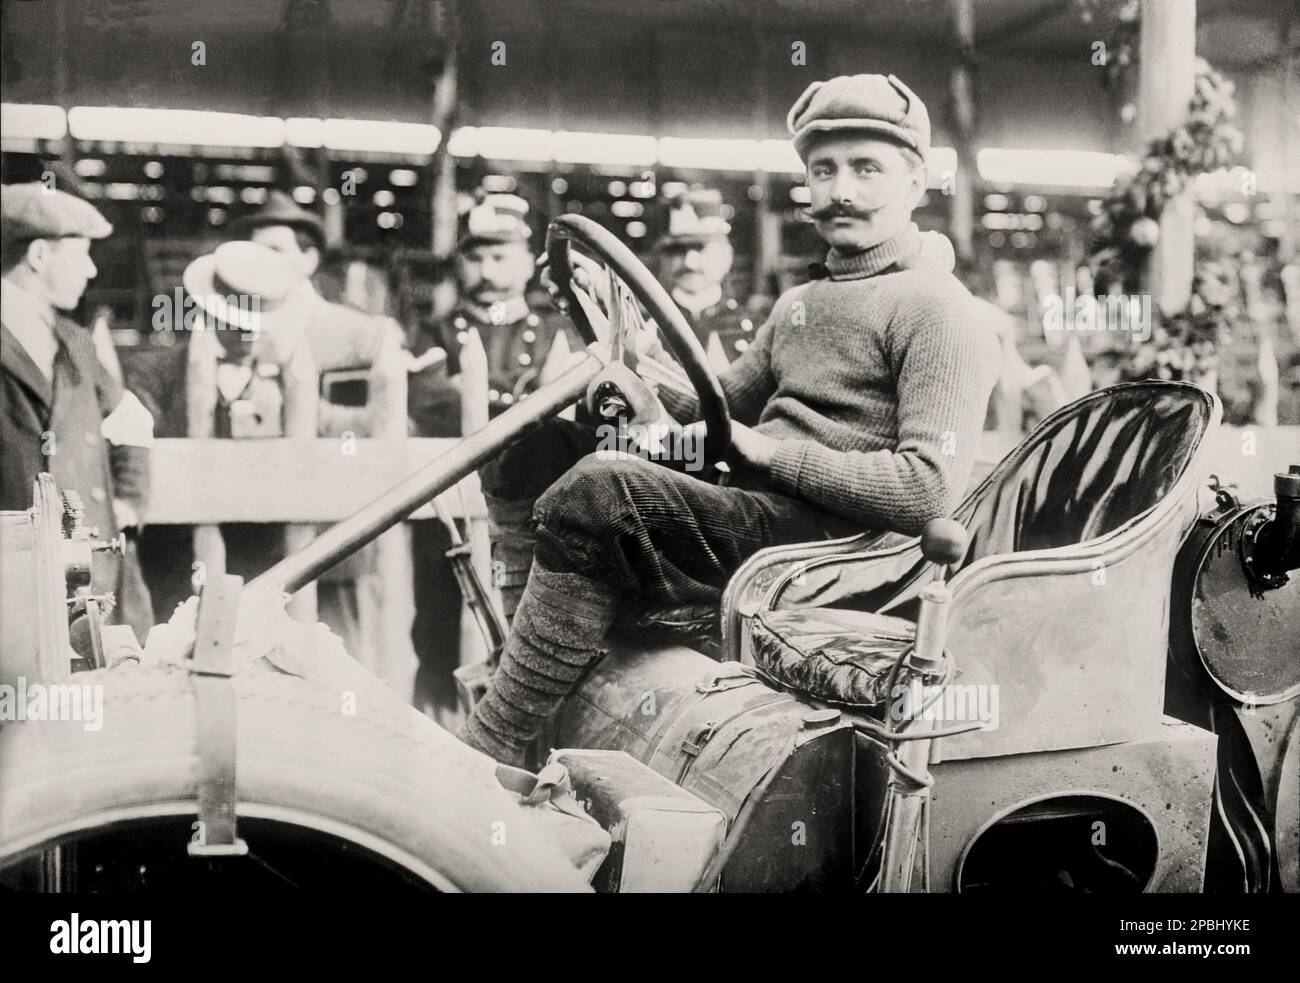 1908 , 18 de mayo, ITALIA : TARGA FLORIO AUTO RACE , 2nd EDICIÓN , EL GANADOR VINCENZO TRUCCO EN ISOTTA FRASCHINI . Vincenzo Trucco fue piloto de carreras de Milán, en 1908 ganó la Targa Florio y participó en Indy 500 en 1913. Trucco también era amigo y mentor de Alfieri Maserati, Con quien patentó bujía automotriz - DEPORTE - AUTOMOBILISMO - gara automobilistica - AUTOMÓVIL - corsa - AUTO - COCHE - FOTO DE LA HISTORIA - FOTO STORICA STORICHE - Targa-florio - baffi - bigote - sombrero - cappello - fustagno - terciopelo - velluto - zuava - BELLE EPOQUE ---- Archivio GBB Foto de stock